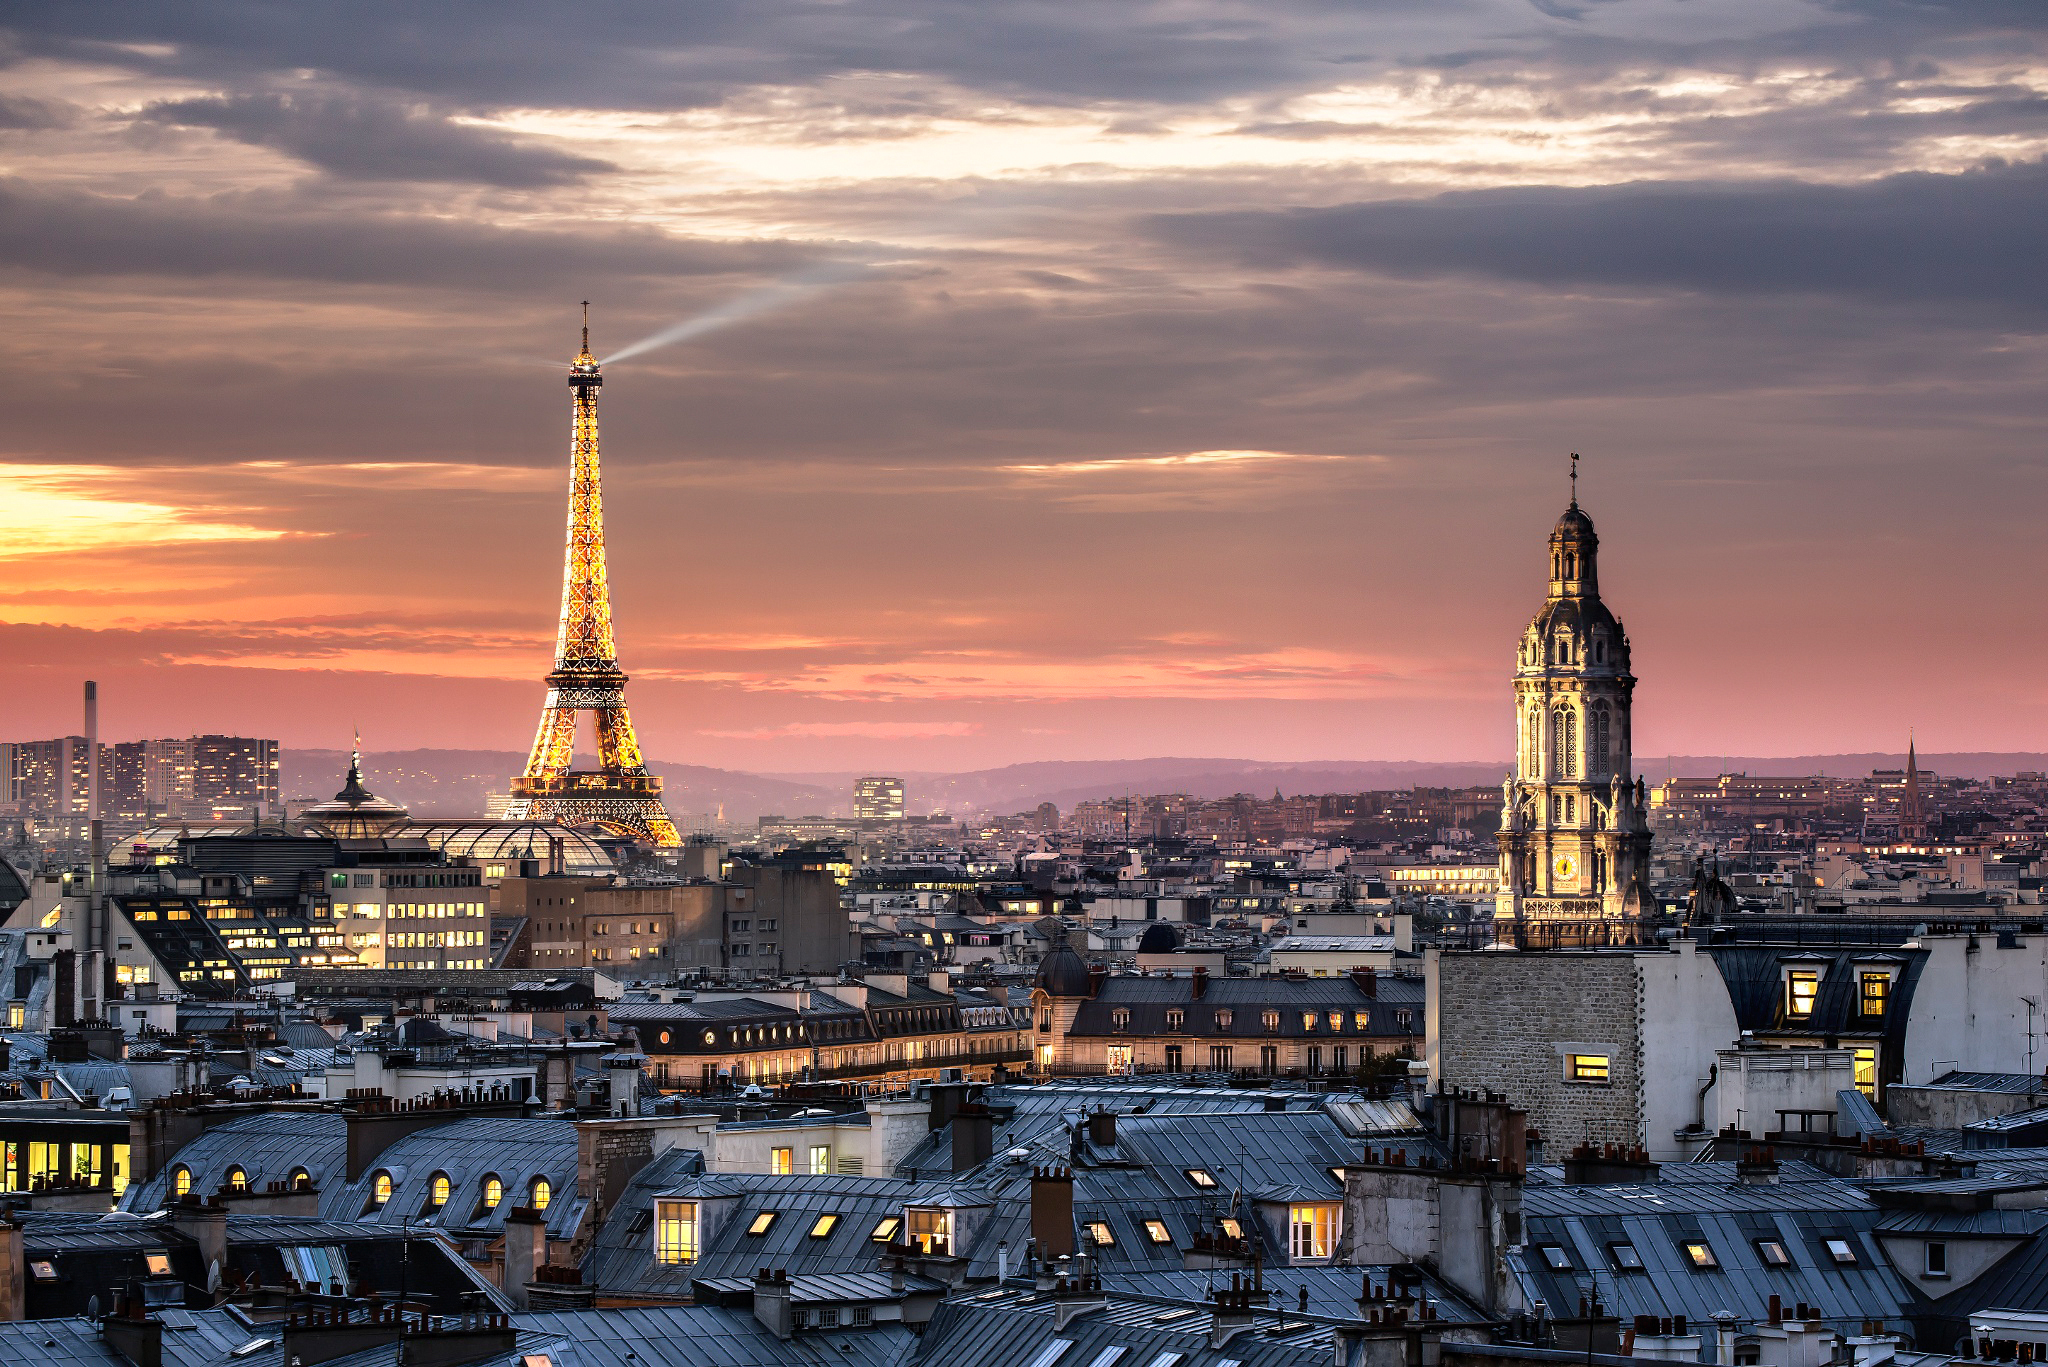 Paris france. Париж столица Франции. Эйфелева башня в Париже -столице Франции. Столица Франции Париж фото. Город Париж Франция достопримечательности.